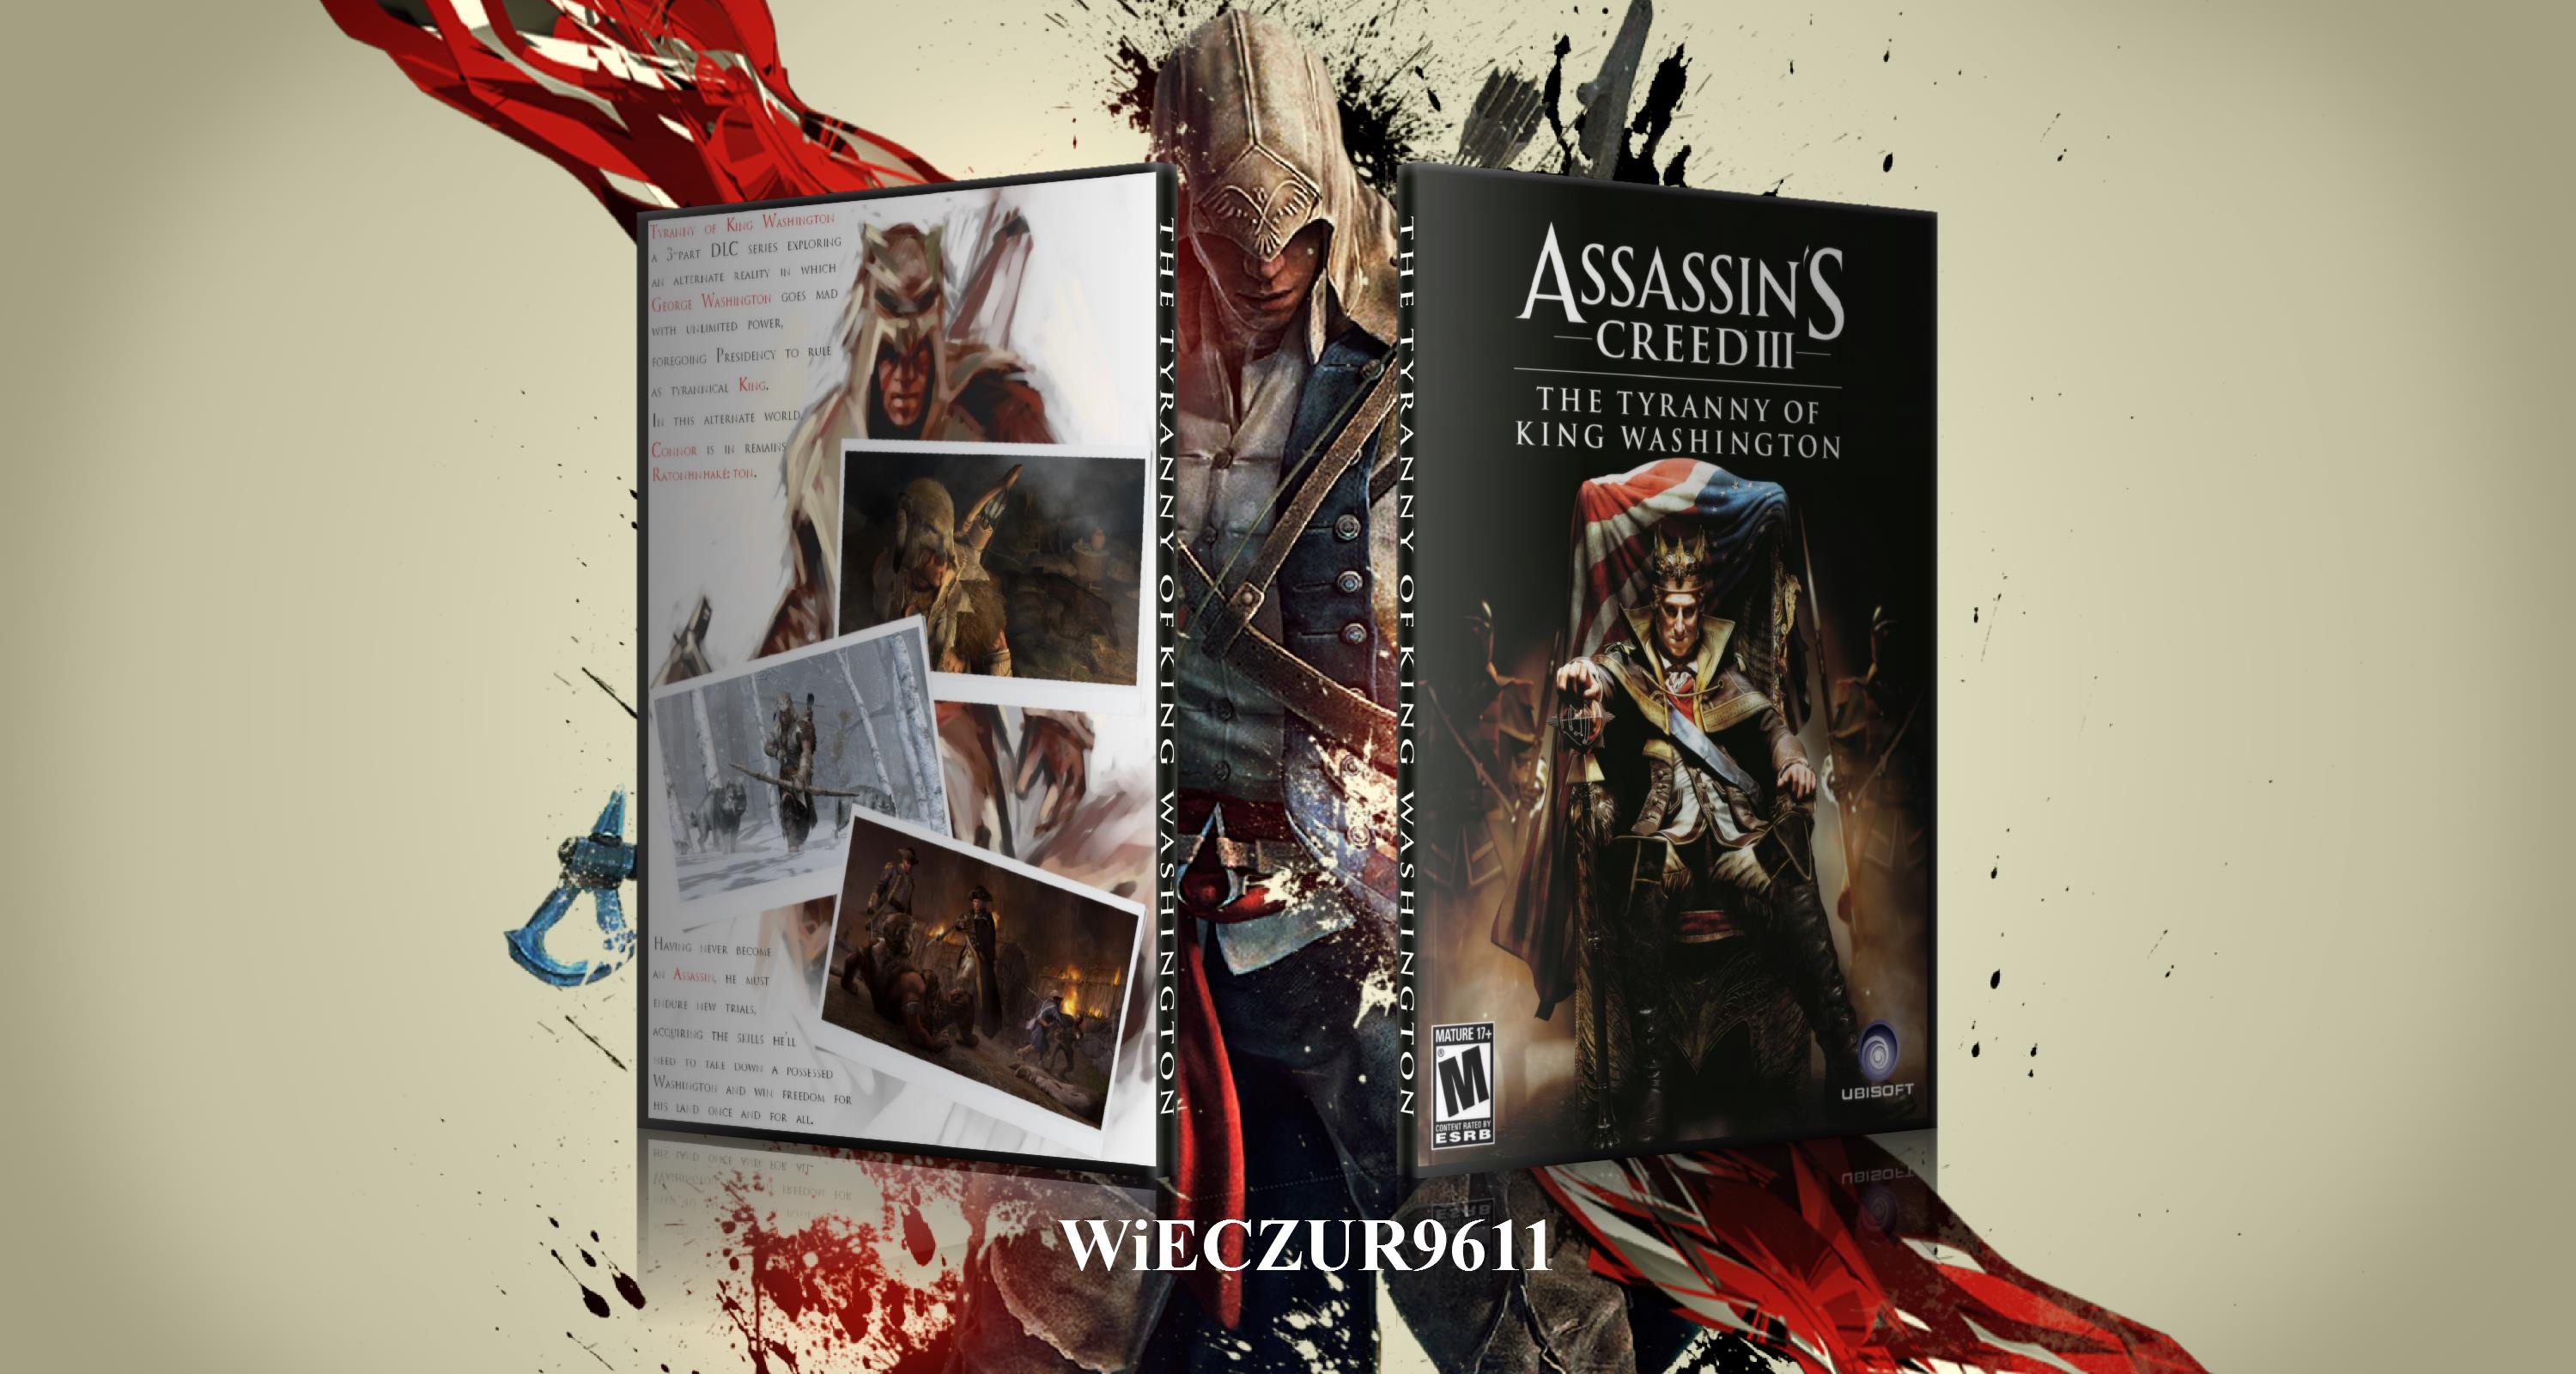 Assassin's Creed III: The Tyranny Of King Washington box cover